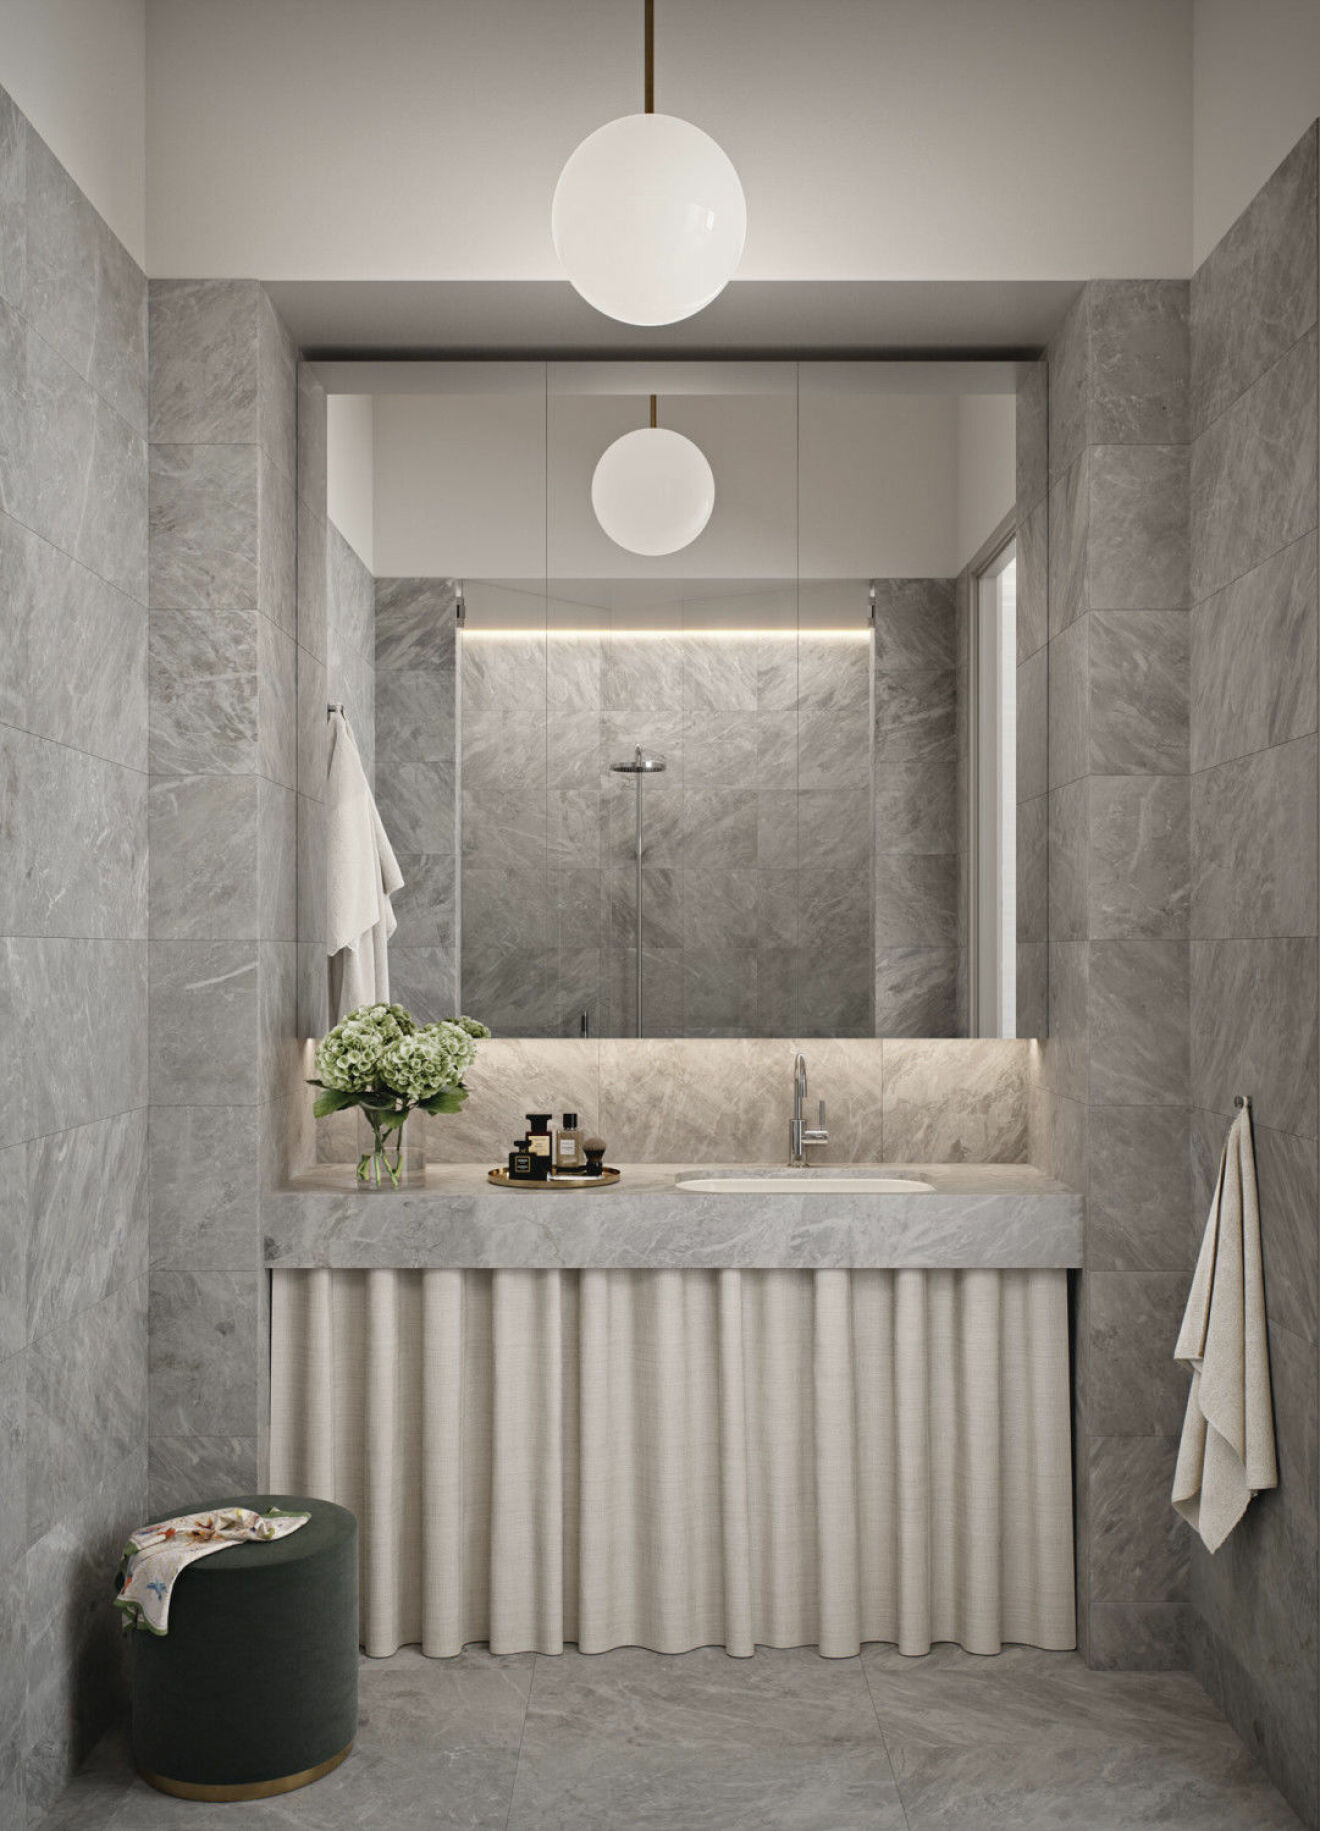 Materialer i badrummen är genomgående ljusgrå marmor med inspiration från en av Tony Craggs stenskulpturer i serien Lost in thought. 